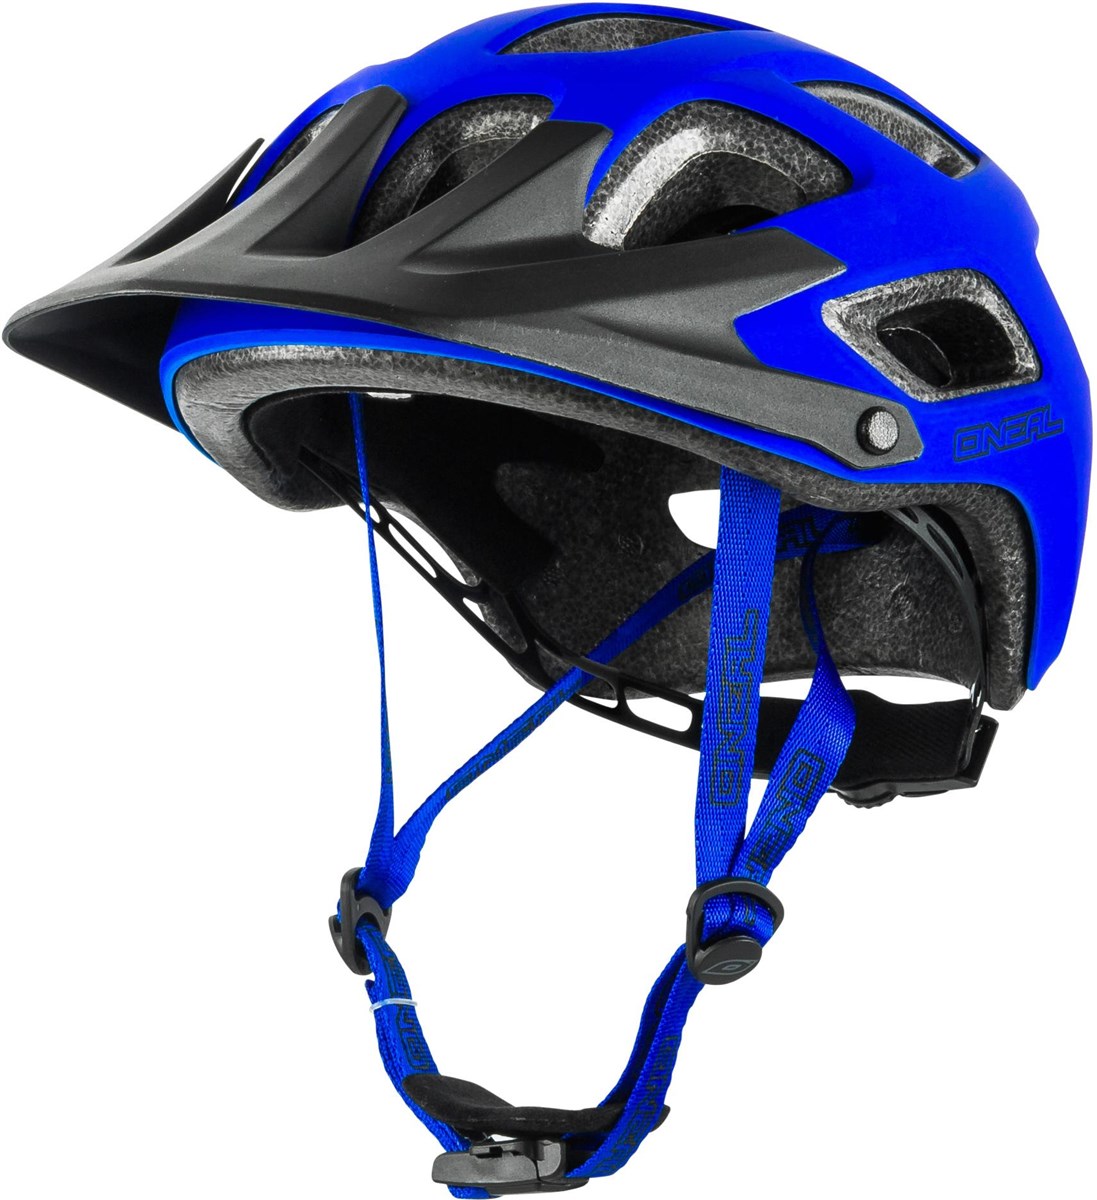 ONeal Thunderball MTB Helmet